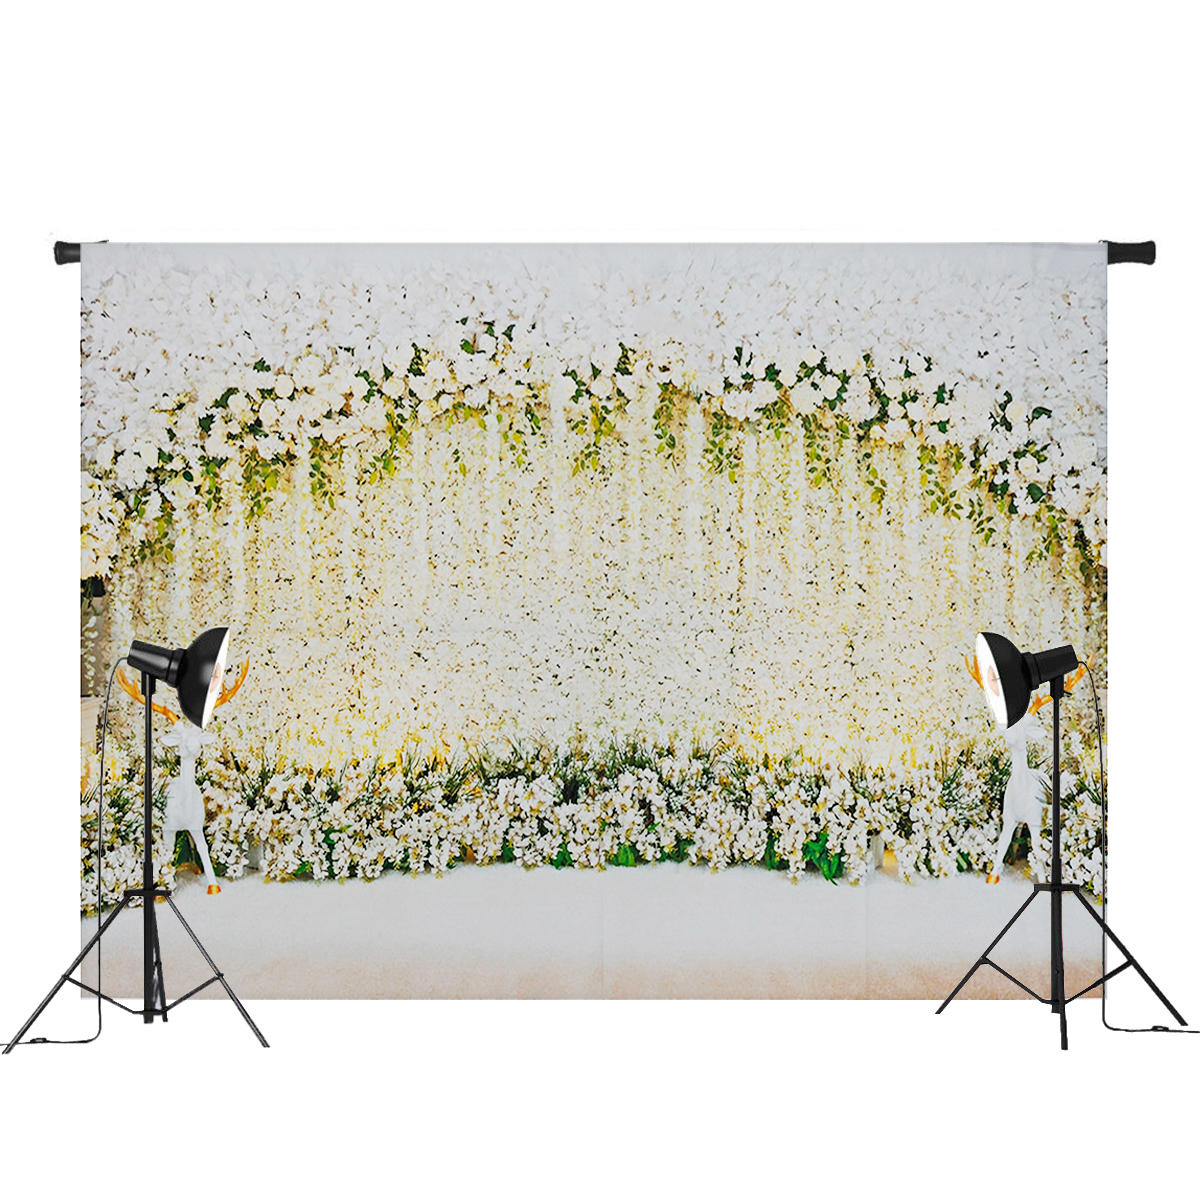 5x3FT 7x5FT Petals and Deer Wedding Photography Backdrop Background Studio Prop